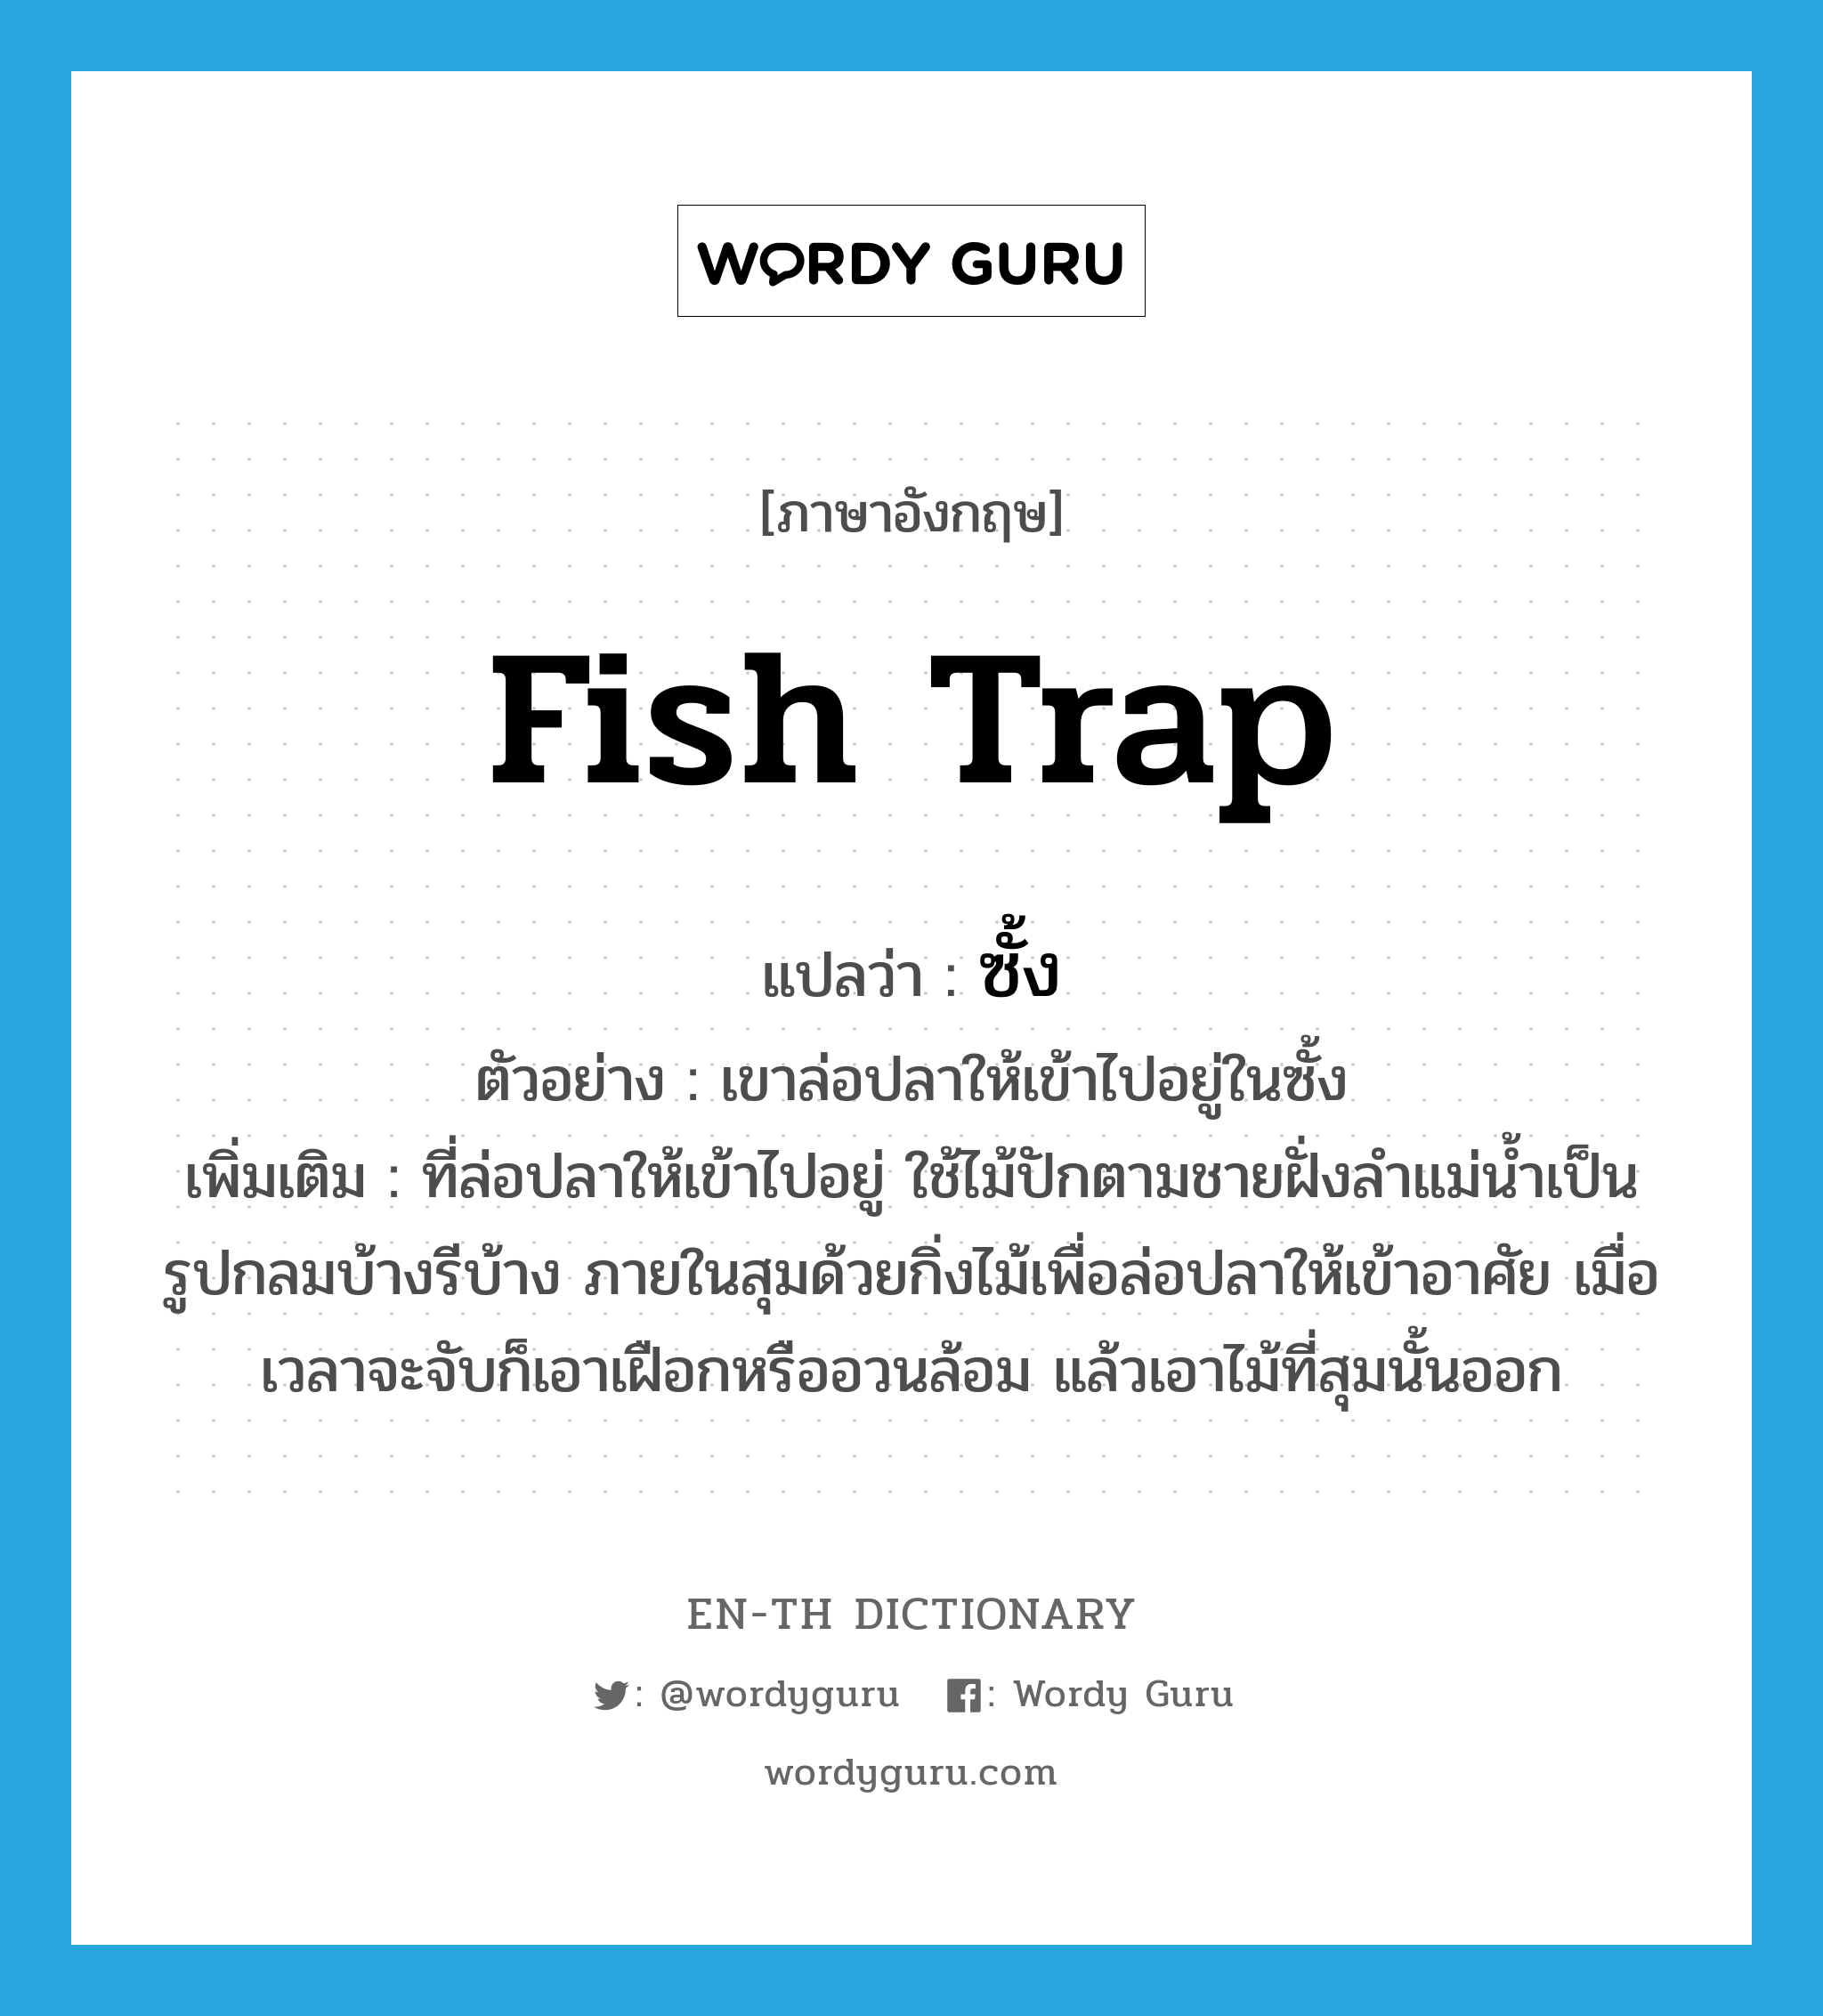 fish trap แปลว่า?, คำศัพท์ภาษาอังกฤษ fish trap แปลว่า ซั้ง ประเภท N ตัวอย่าง เขาล่อปลาให้เข้าไปอยู่ในซั้ง เพิ่มเติม ที่ล่อปลาให้เข้าไปอยู่ ใช้ไม้ปักตามชายฝั่งลำแม่น้ำเป็นรูปกลมบ้างรีบ้าง ภายในสุมด้วยกิ่งไม้เพื่อล่อปลาให้เข้าอาศัย เมื่อเวลาจะจับก็เอาเฝือกหรืออวนล้อม แล้วเอาไม้ที่สุมนั้นออก หมวด N